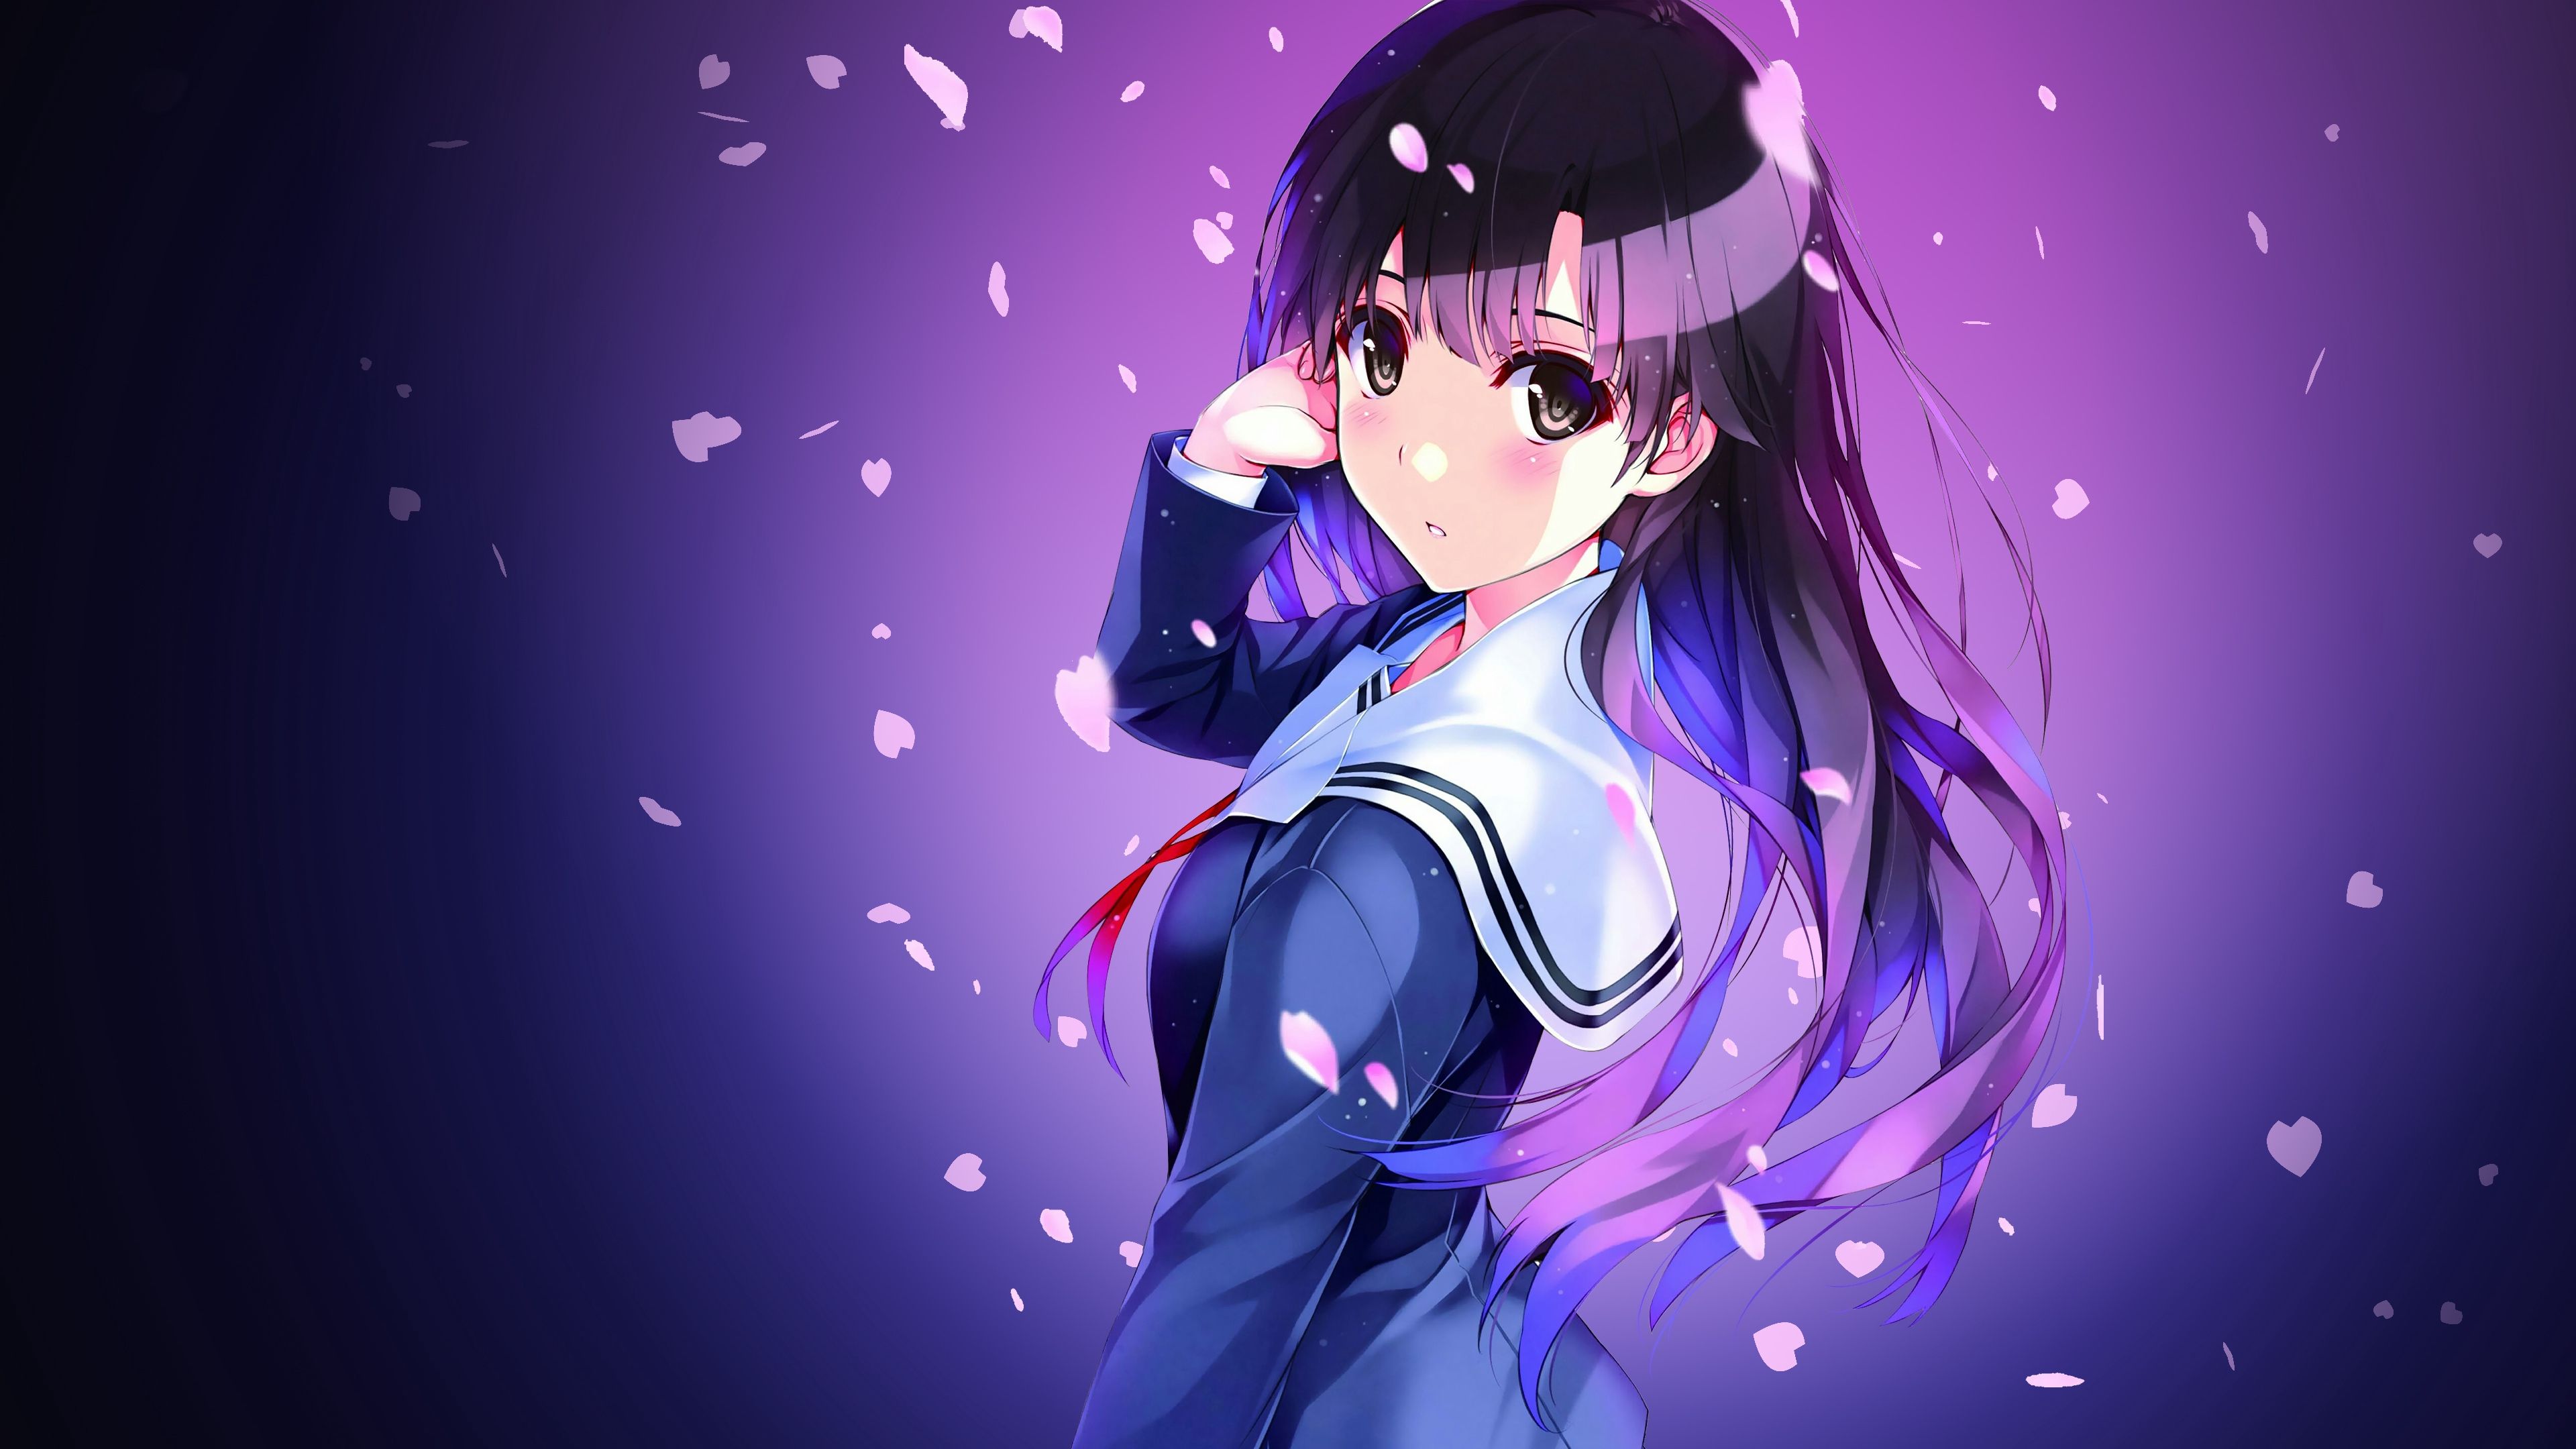 Download wallpaper 3840x2160 anime, schoolgirl, uniform, girl HD